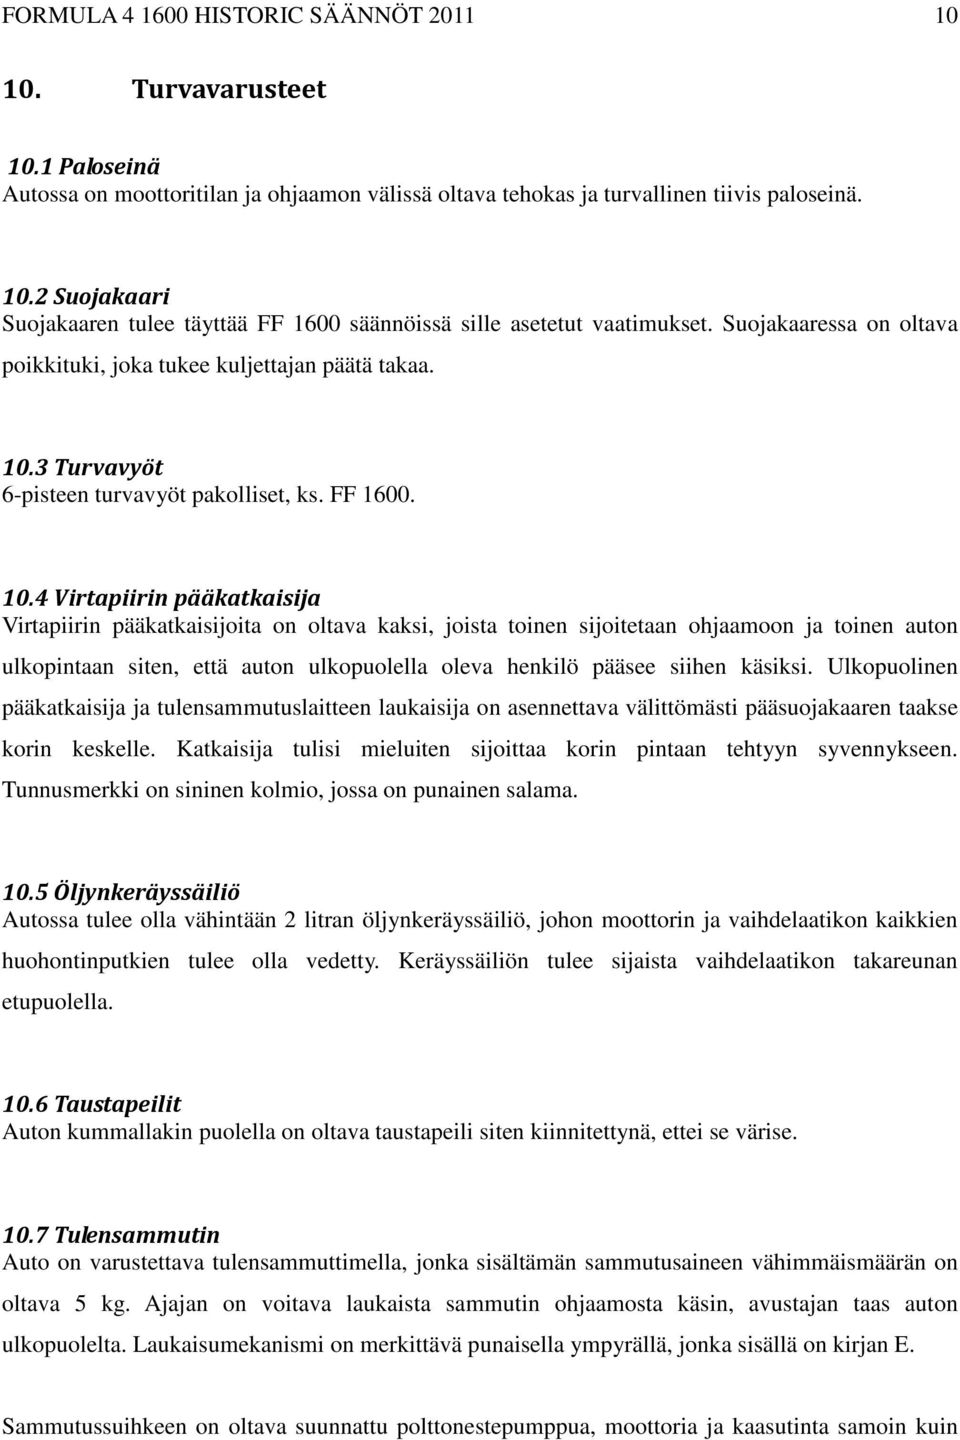 3 Turvavyöt 6-pisteen turvavyöt pakolliset, ks. FF 1600. 10.